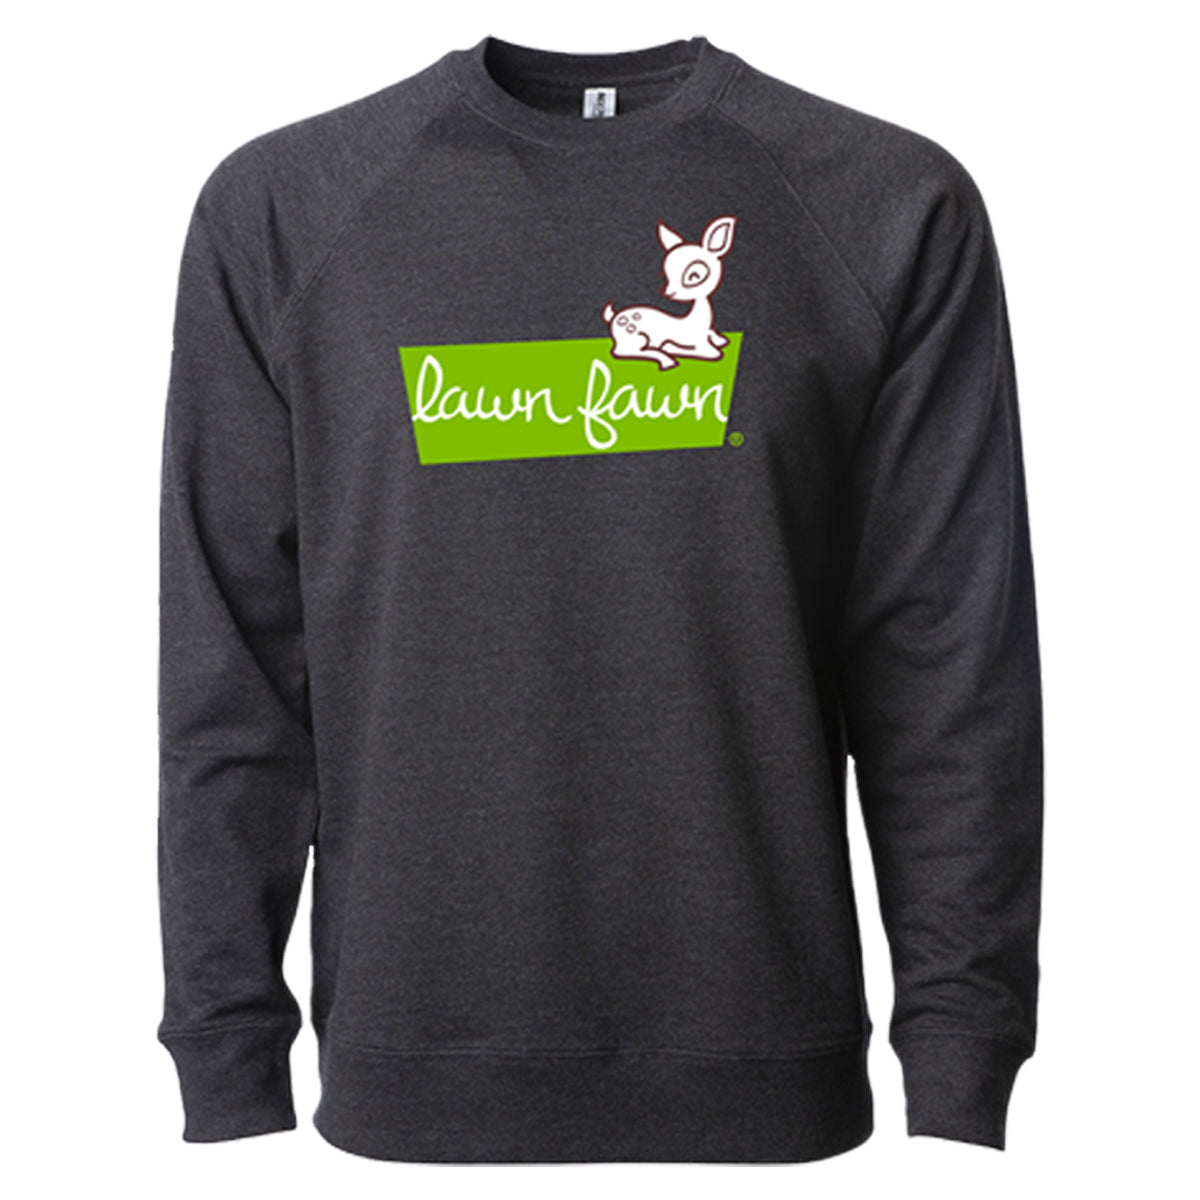 lawn fawn sweatshirt - medium